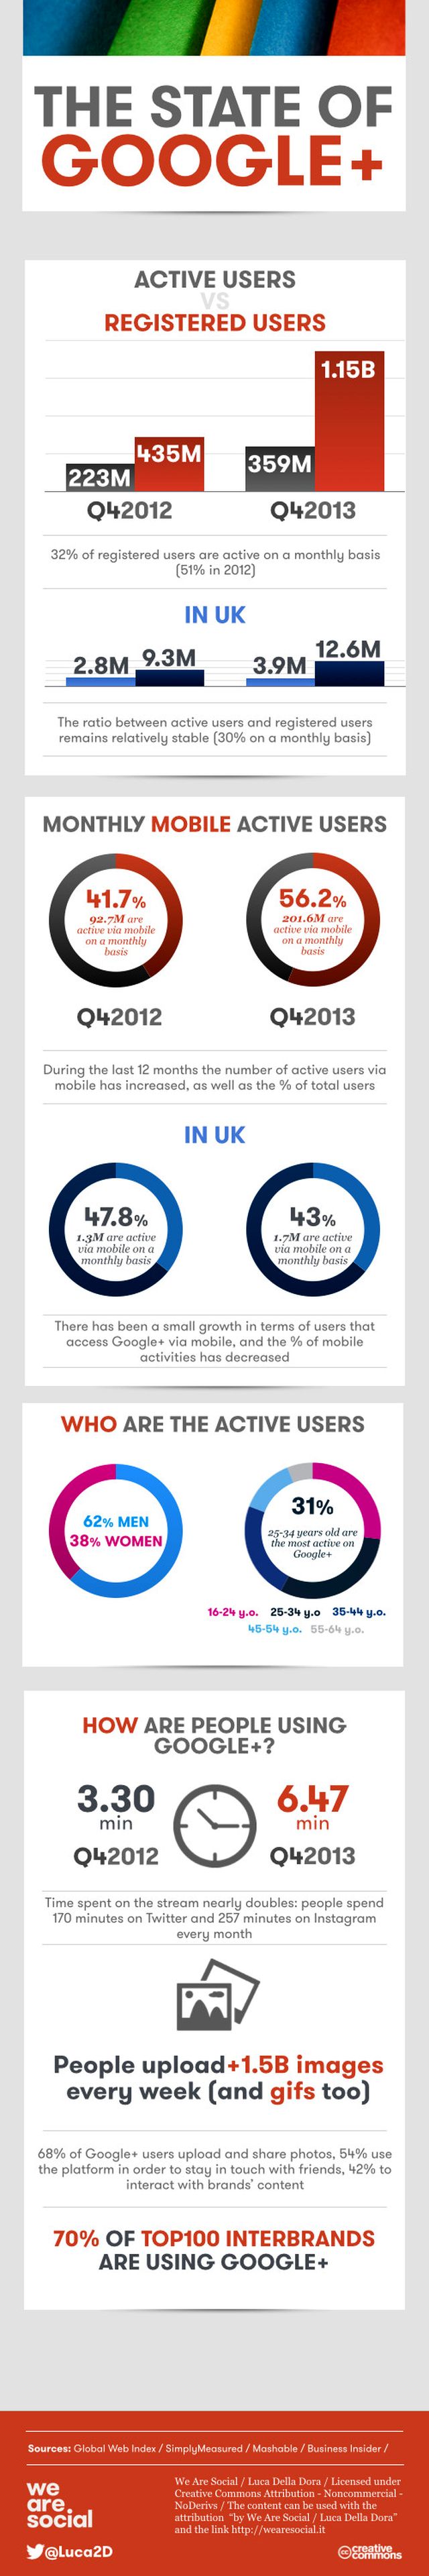 Conoce el estado de Google+, ahora si que crece (infografía)